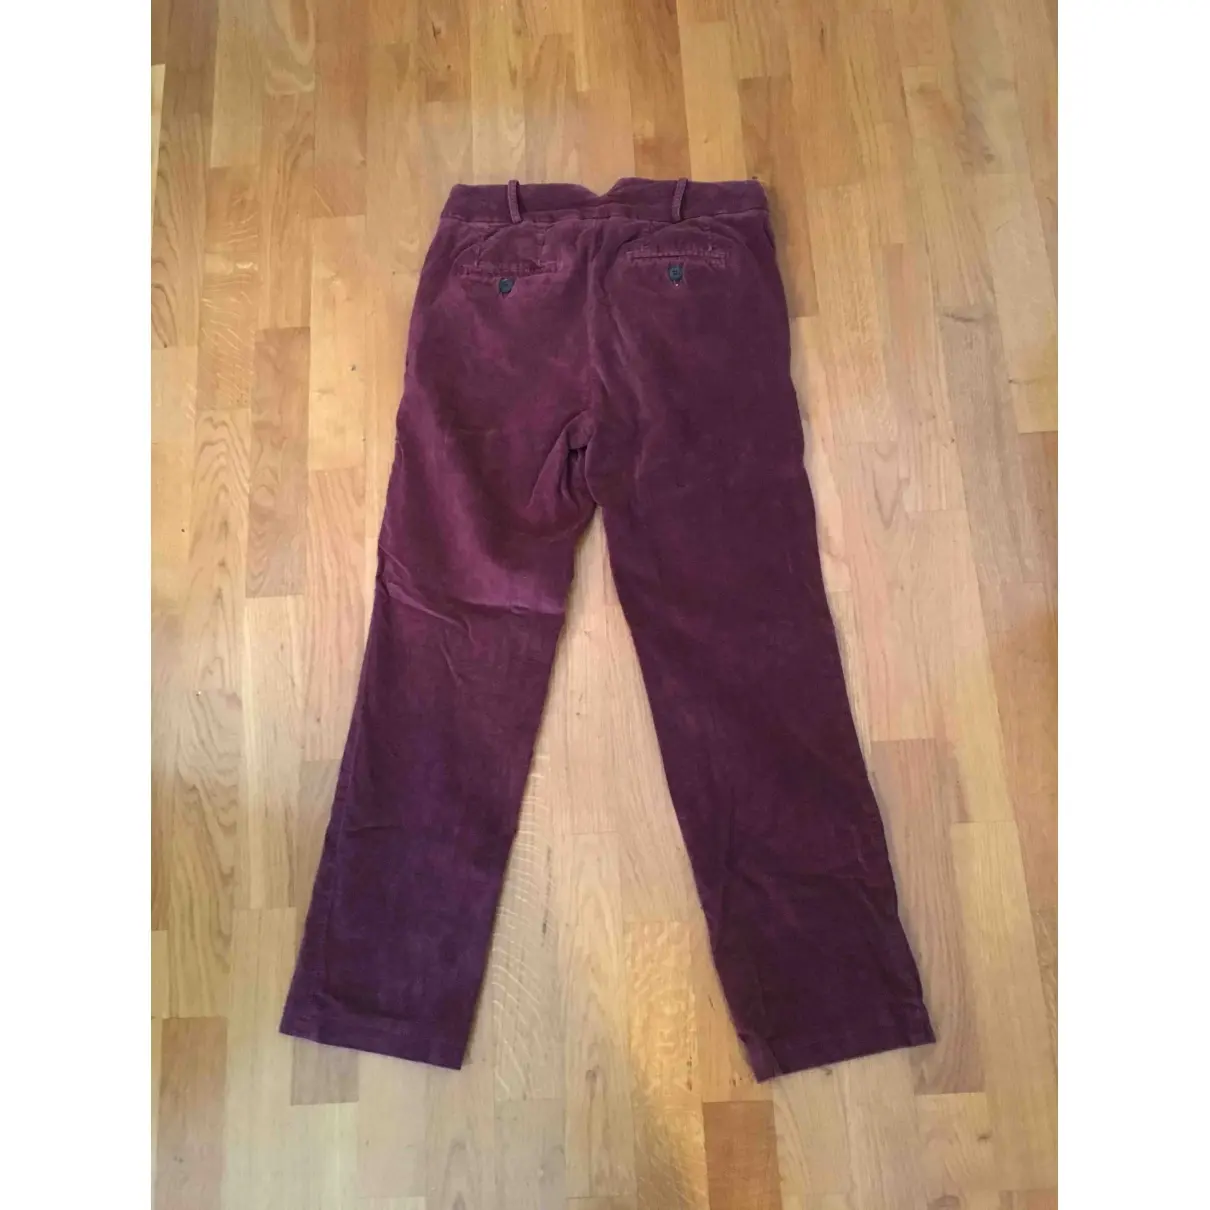 Bellerose Velvet short pants for sale